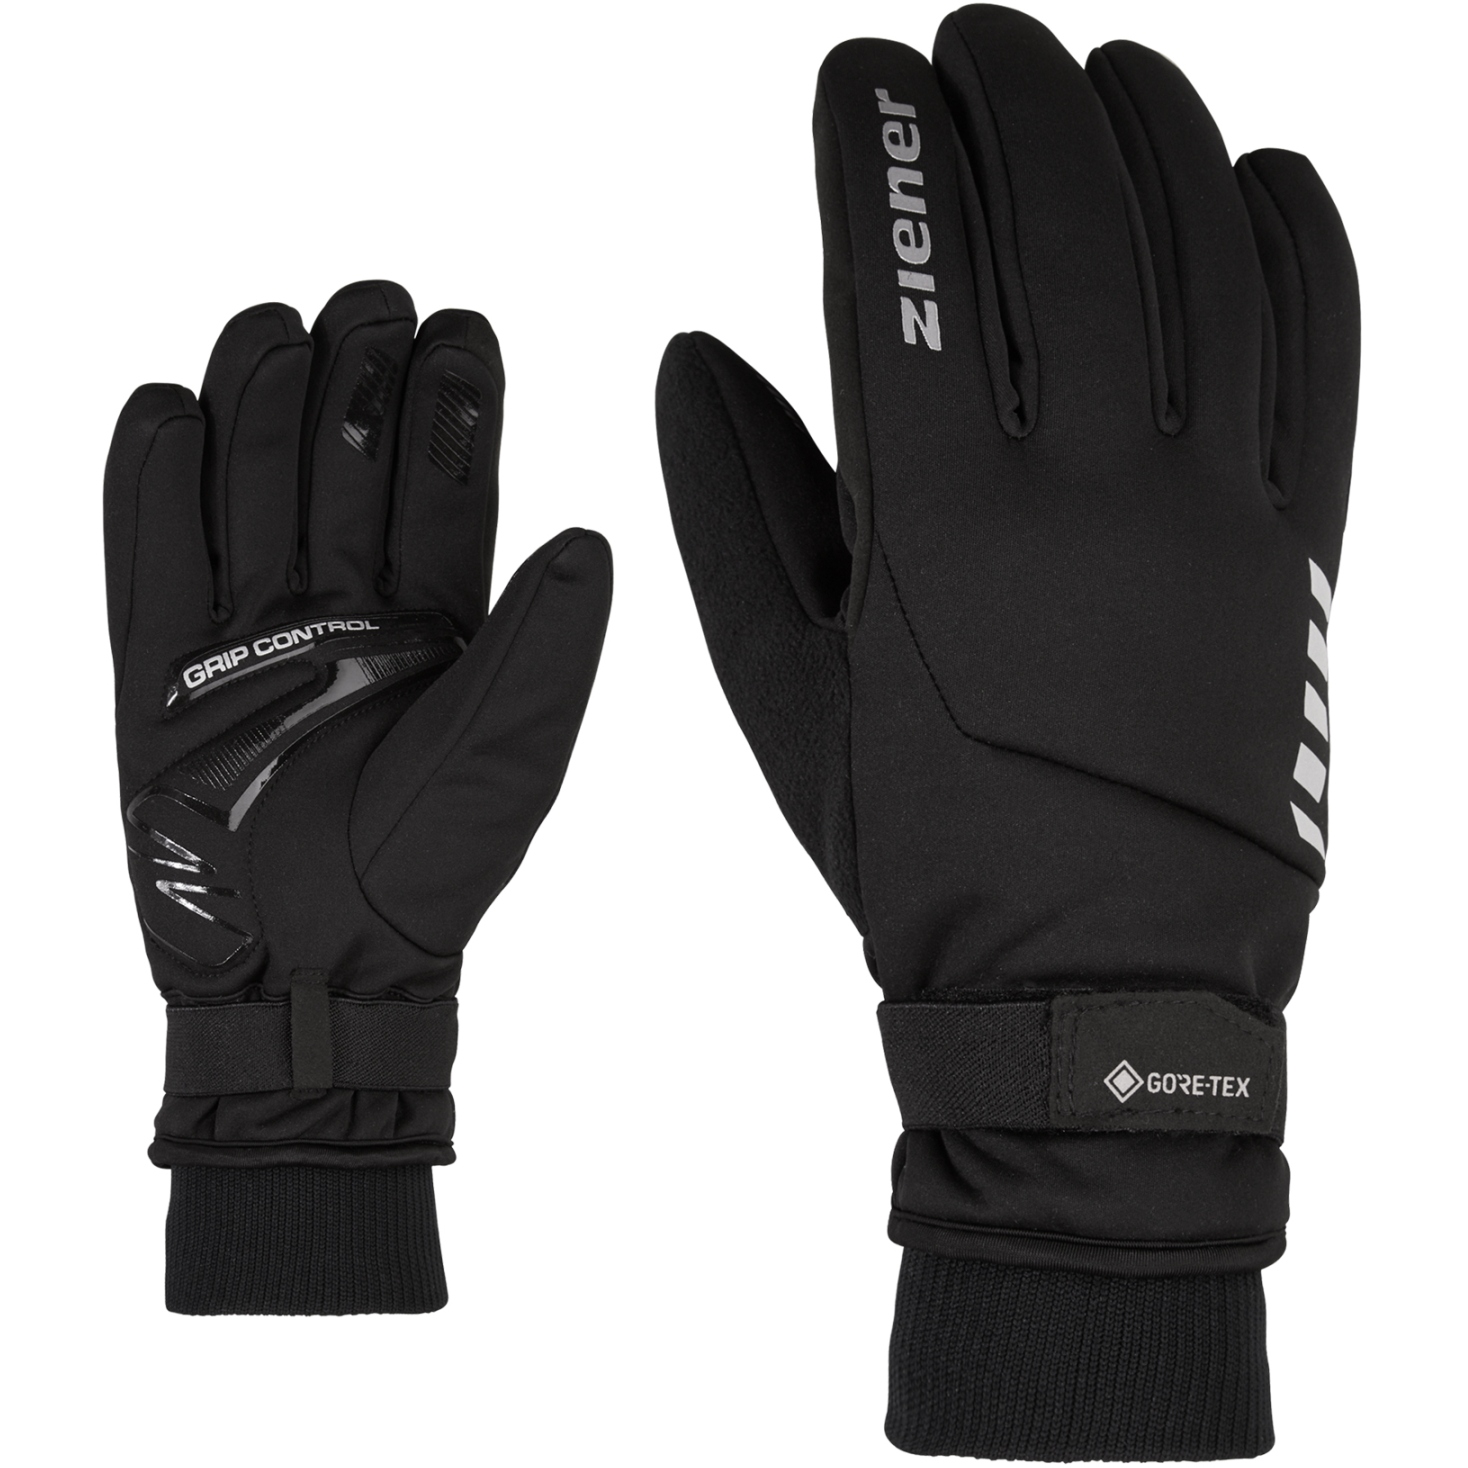 Productfoto van Ziener Drukox GTX Bike Gloves - black